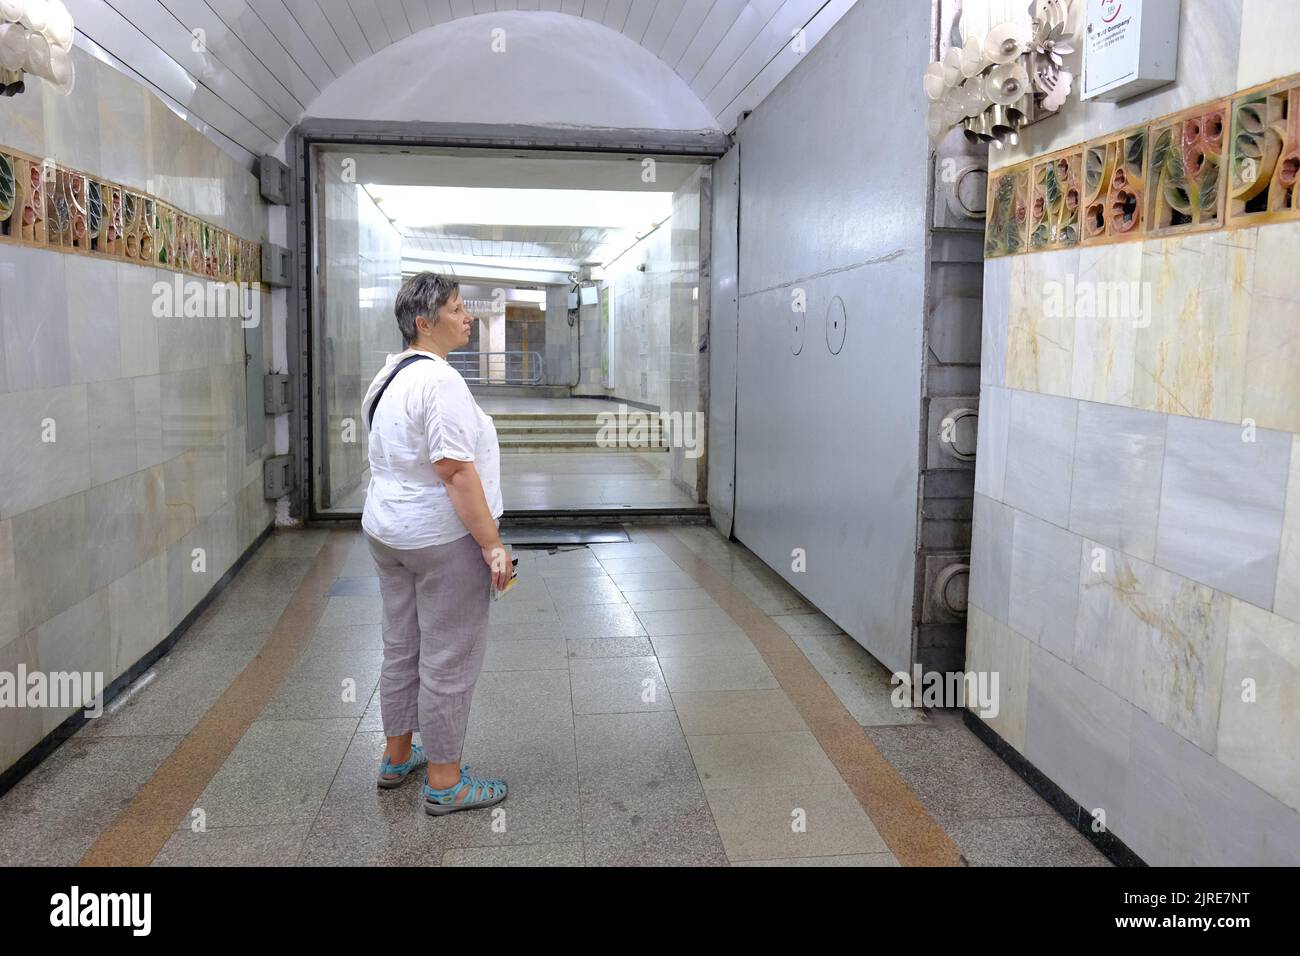 Tashkent Uzbekistán Un visitante mira una enorme puerta a prueba de explosión de bombas nucleares de acero en una estación de metro de Tashkent Foto de stock